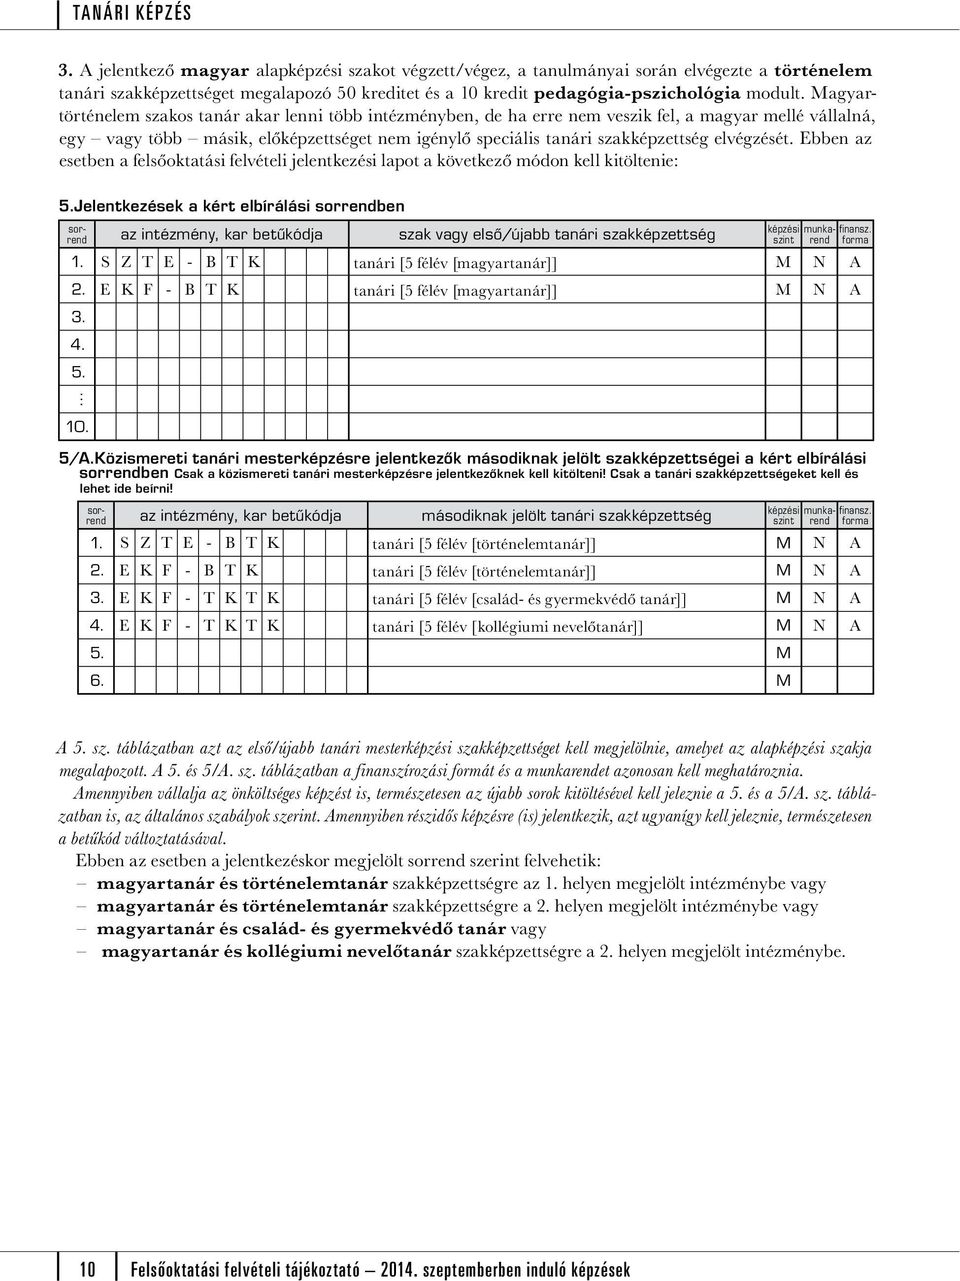 Felsőoktatási felvételi tájékoztató szeptemberben induló képzések - PDF  Ingyenes letöltés